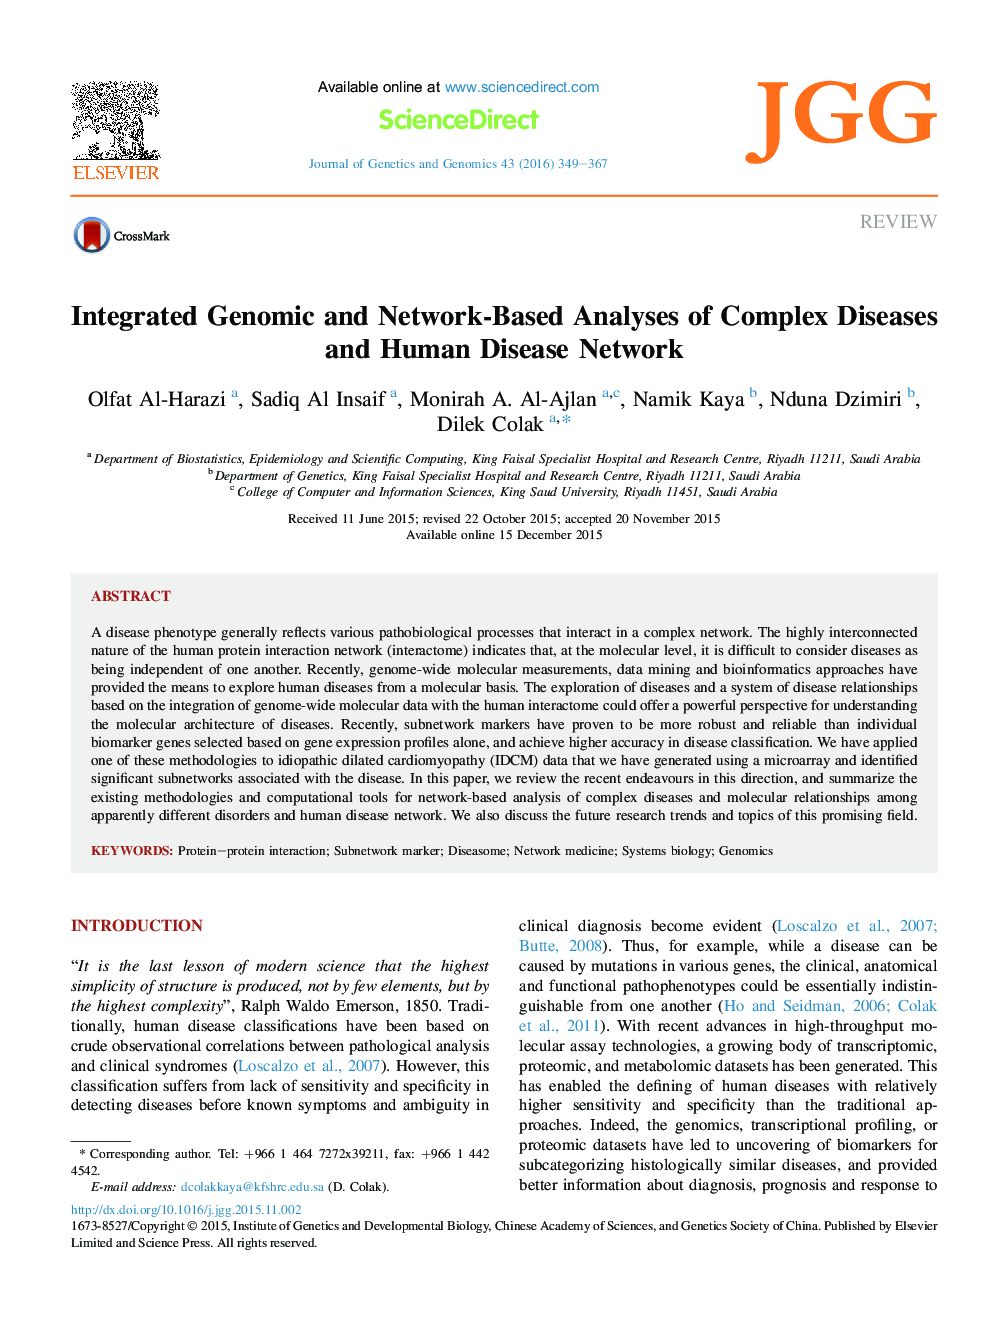 تجزیه و تحلیل انحصاری ژنومیک و مبتنی بر شبکه از بیماری های پیچیده و شبکه بیماری های انسانی 